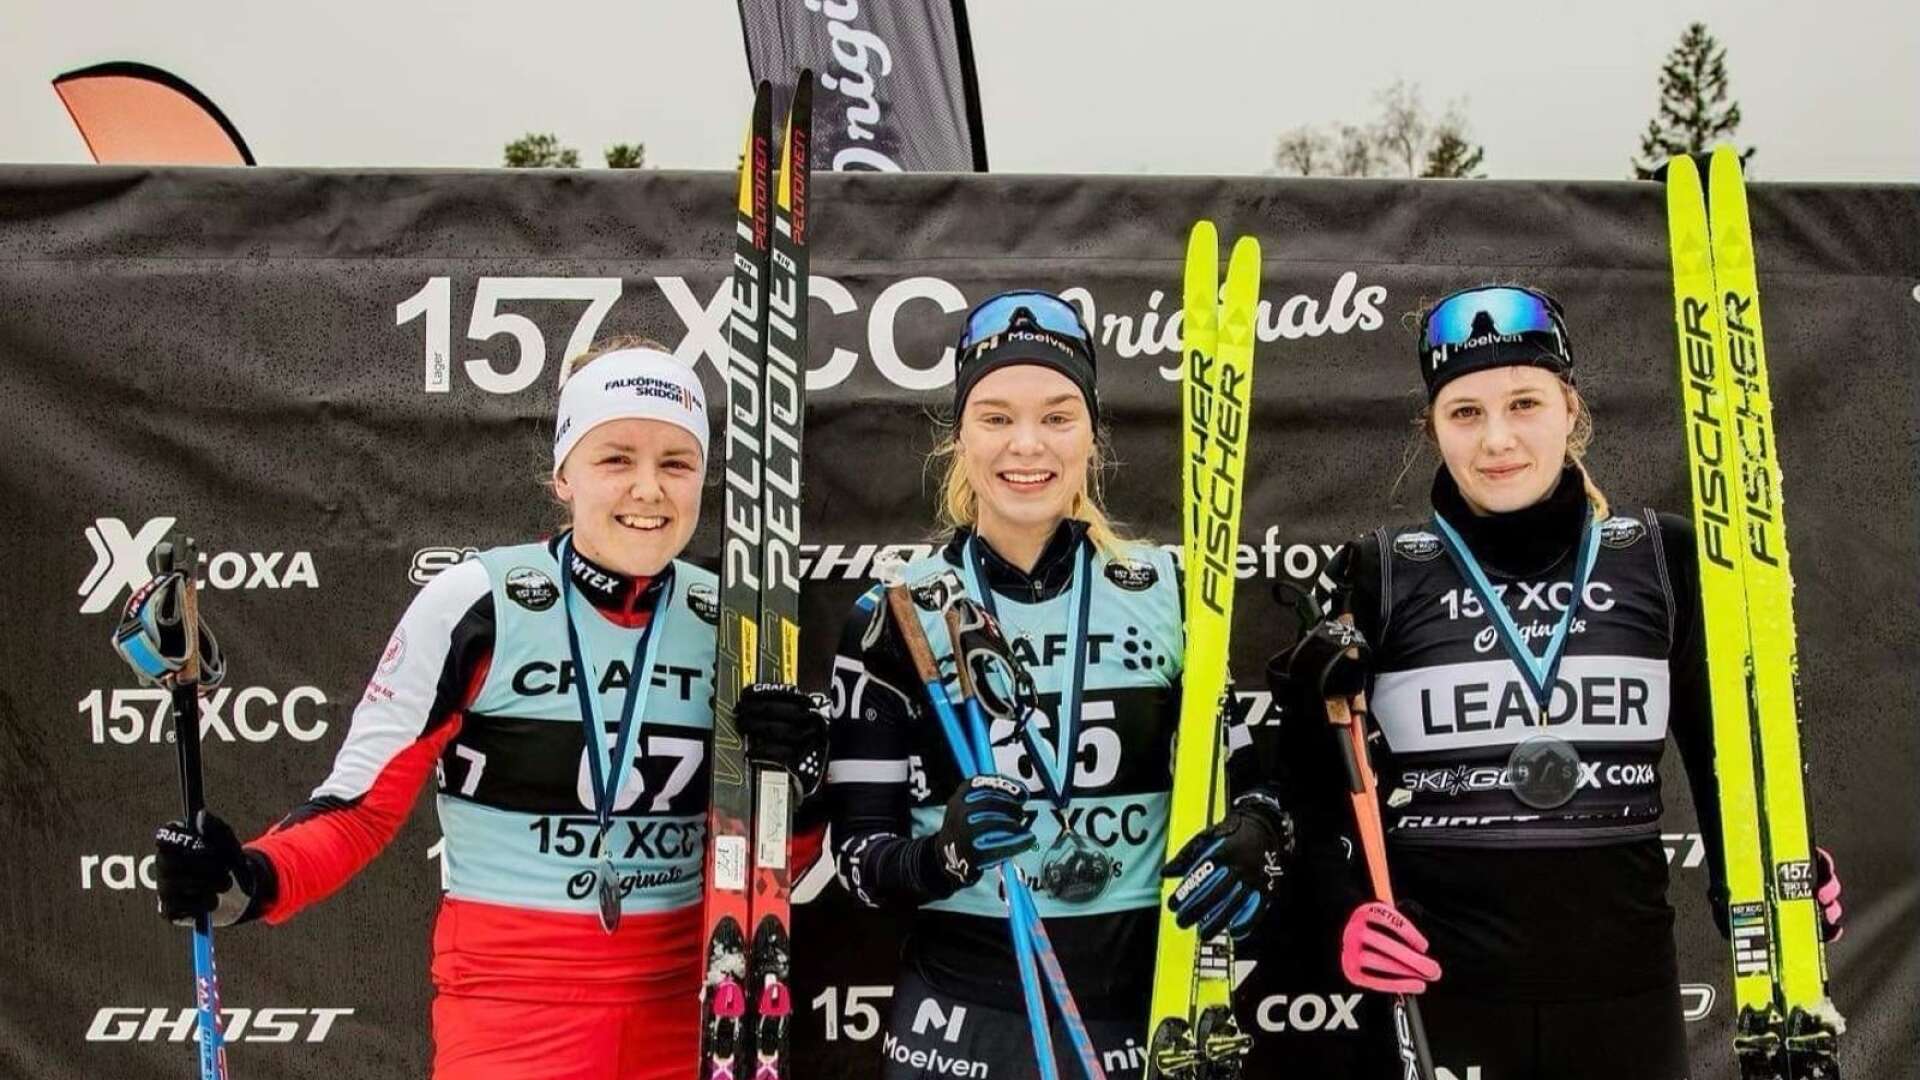 Just nu pågår den svenska långloppscupen och där har det gått riktigt bra för Maja Eriksson, till höger. 